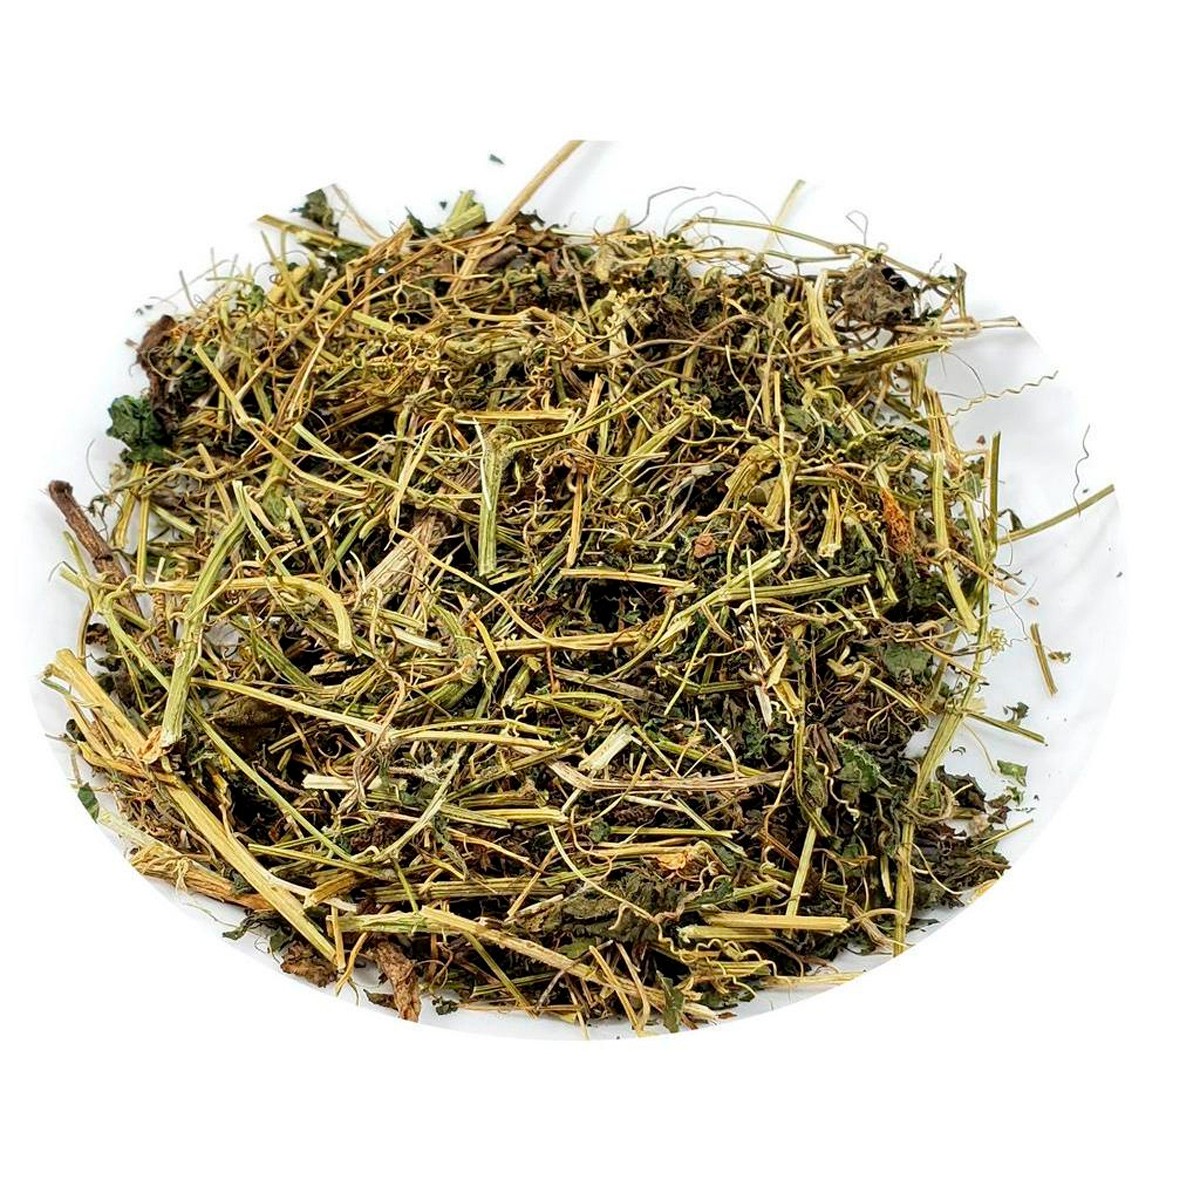 Chá de Cipó Azougue – Apodanthera Smilacifolia – 100g